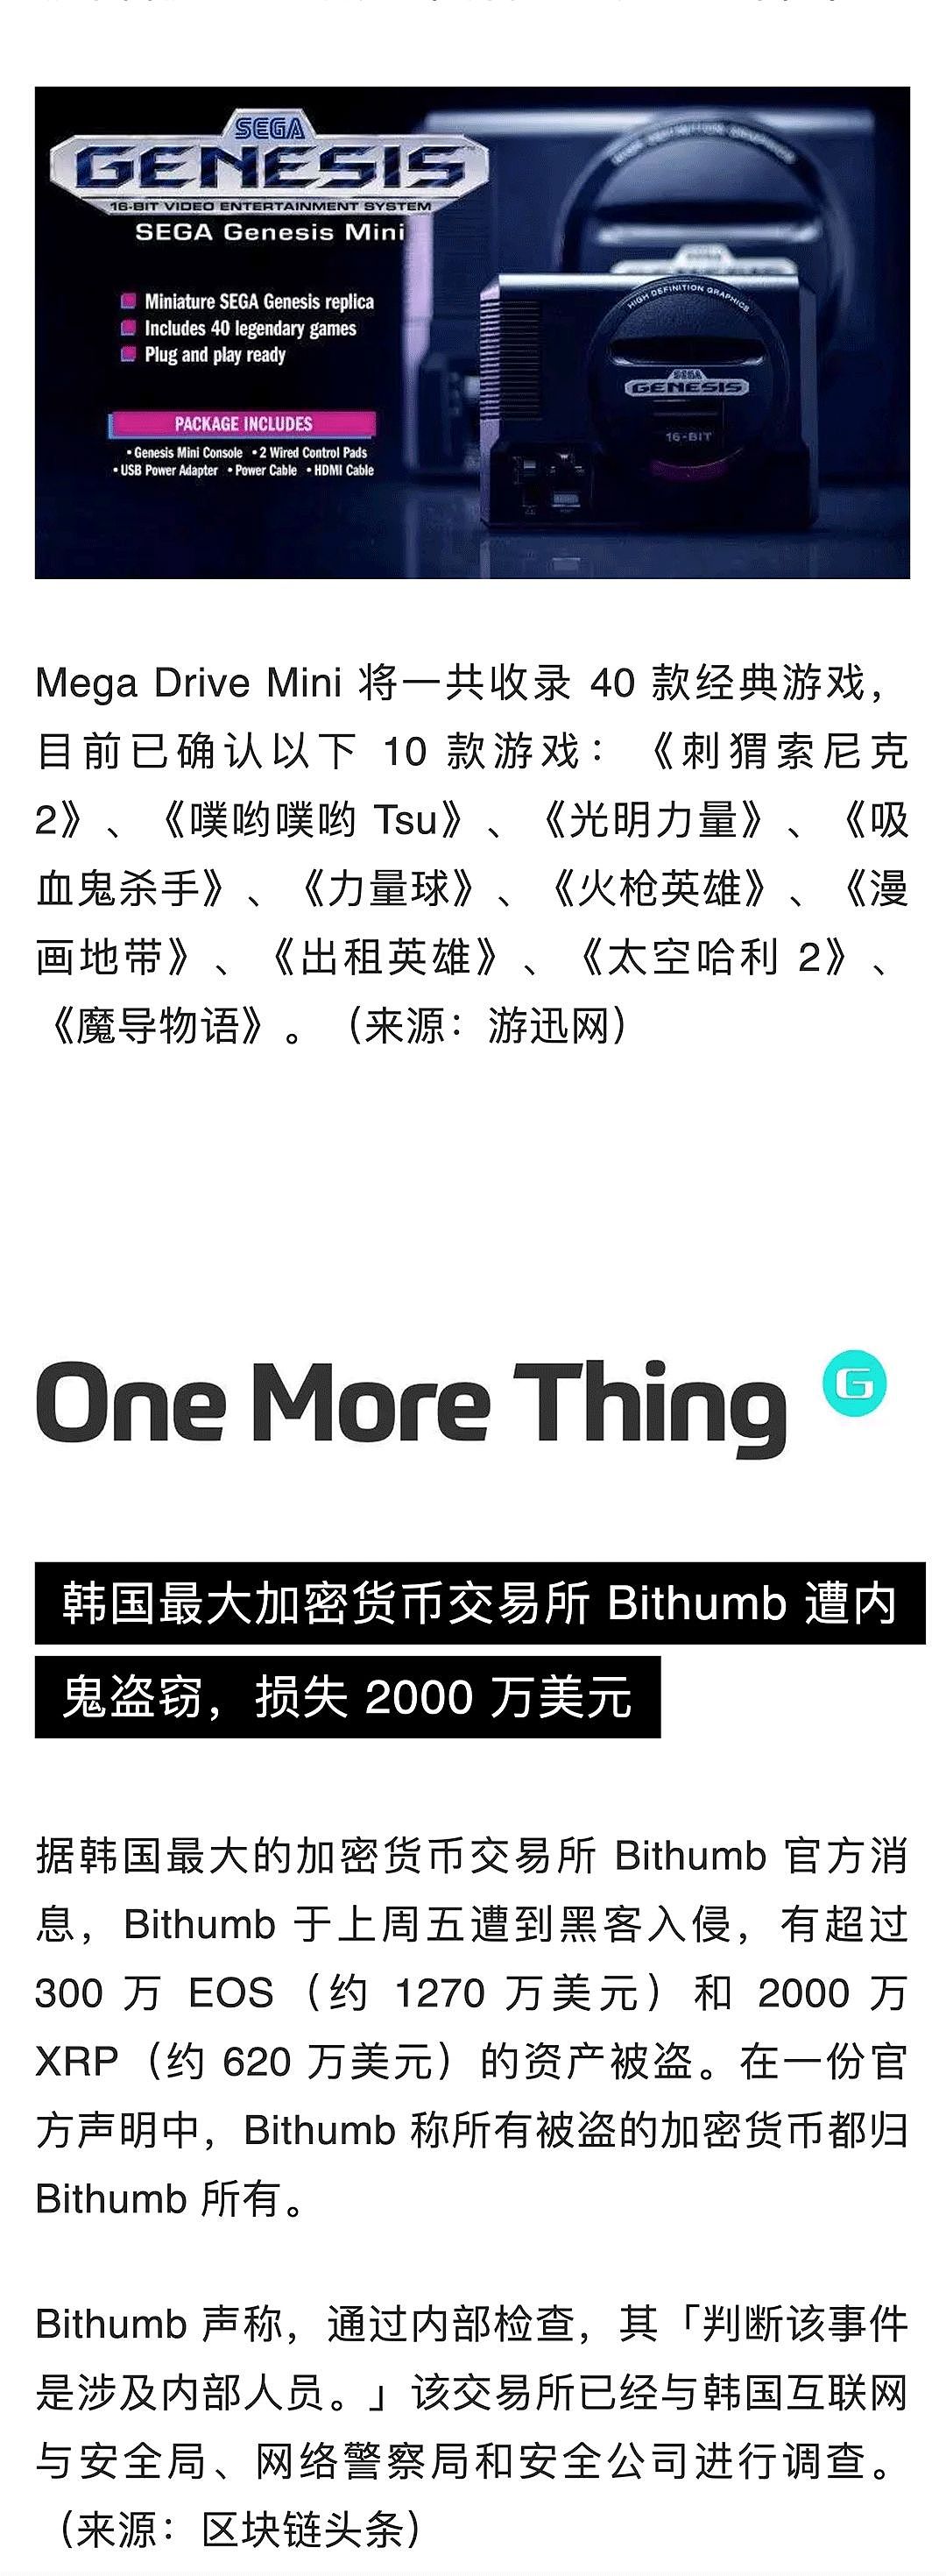 苹果中国全线降价约 3%；熊猫直播宣布正式关闭；苹果挖角特斯拉工程副总裁 | 极客早知道 - 9